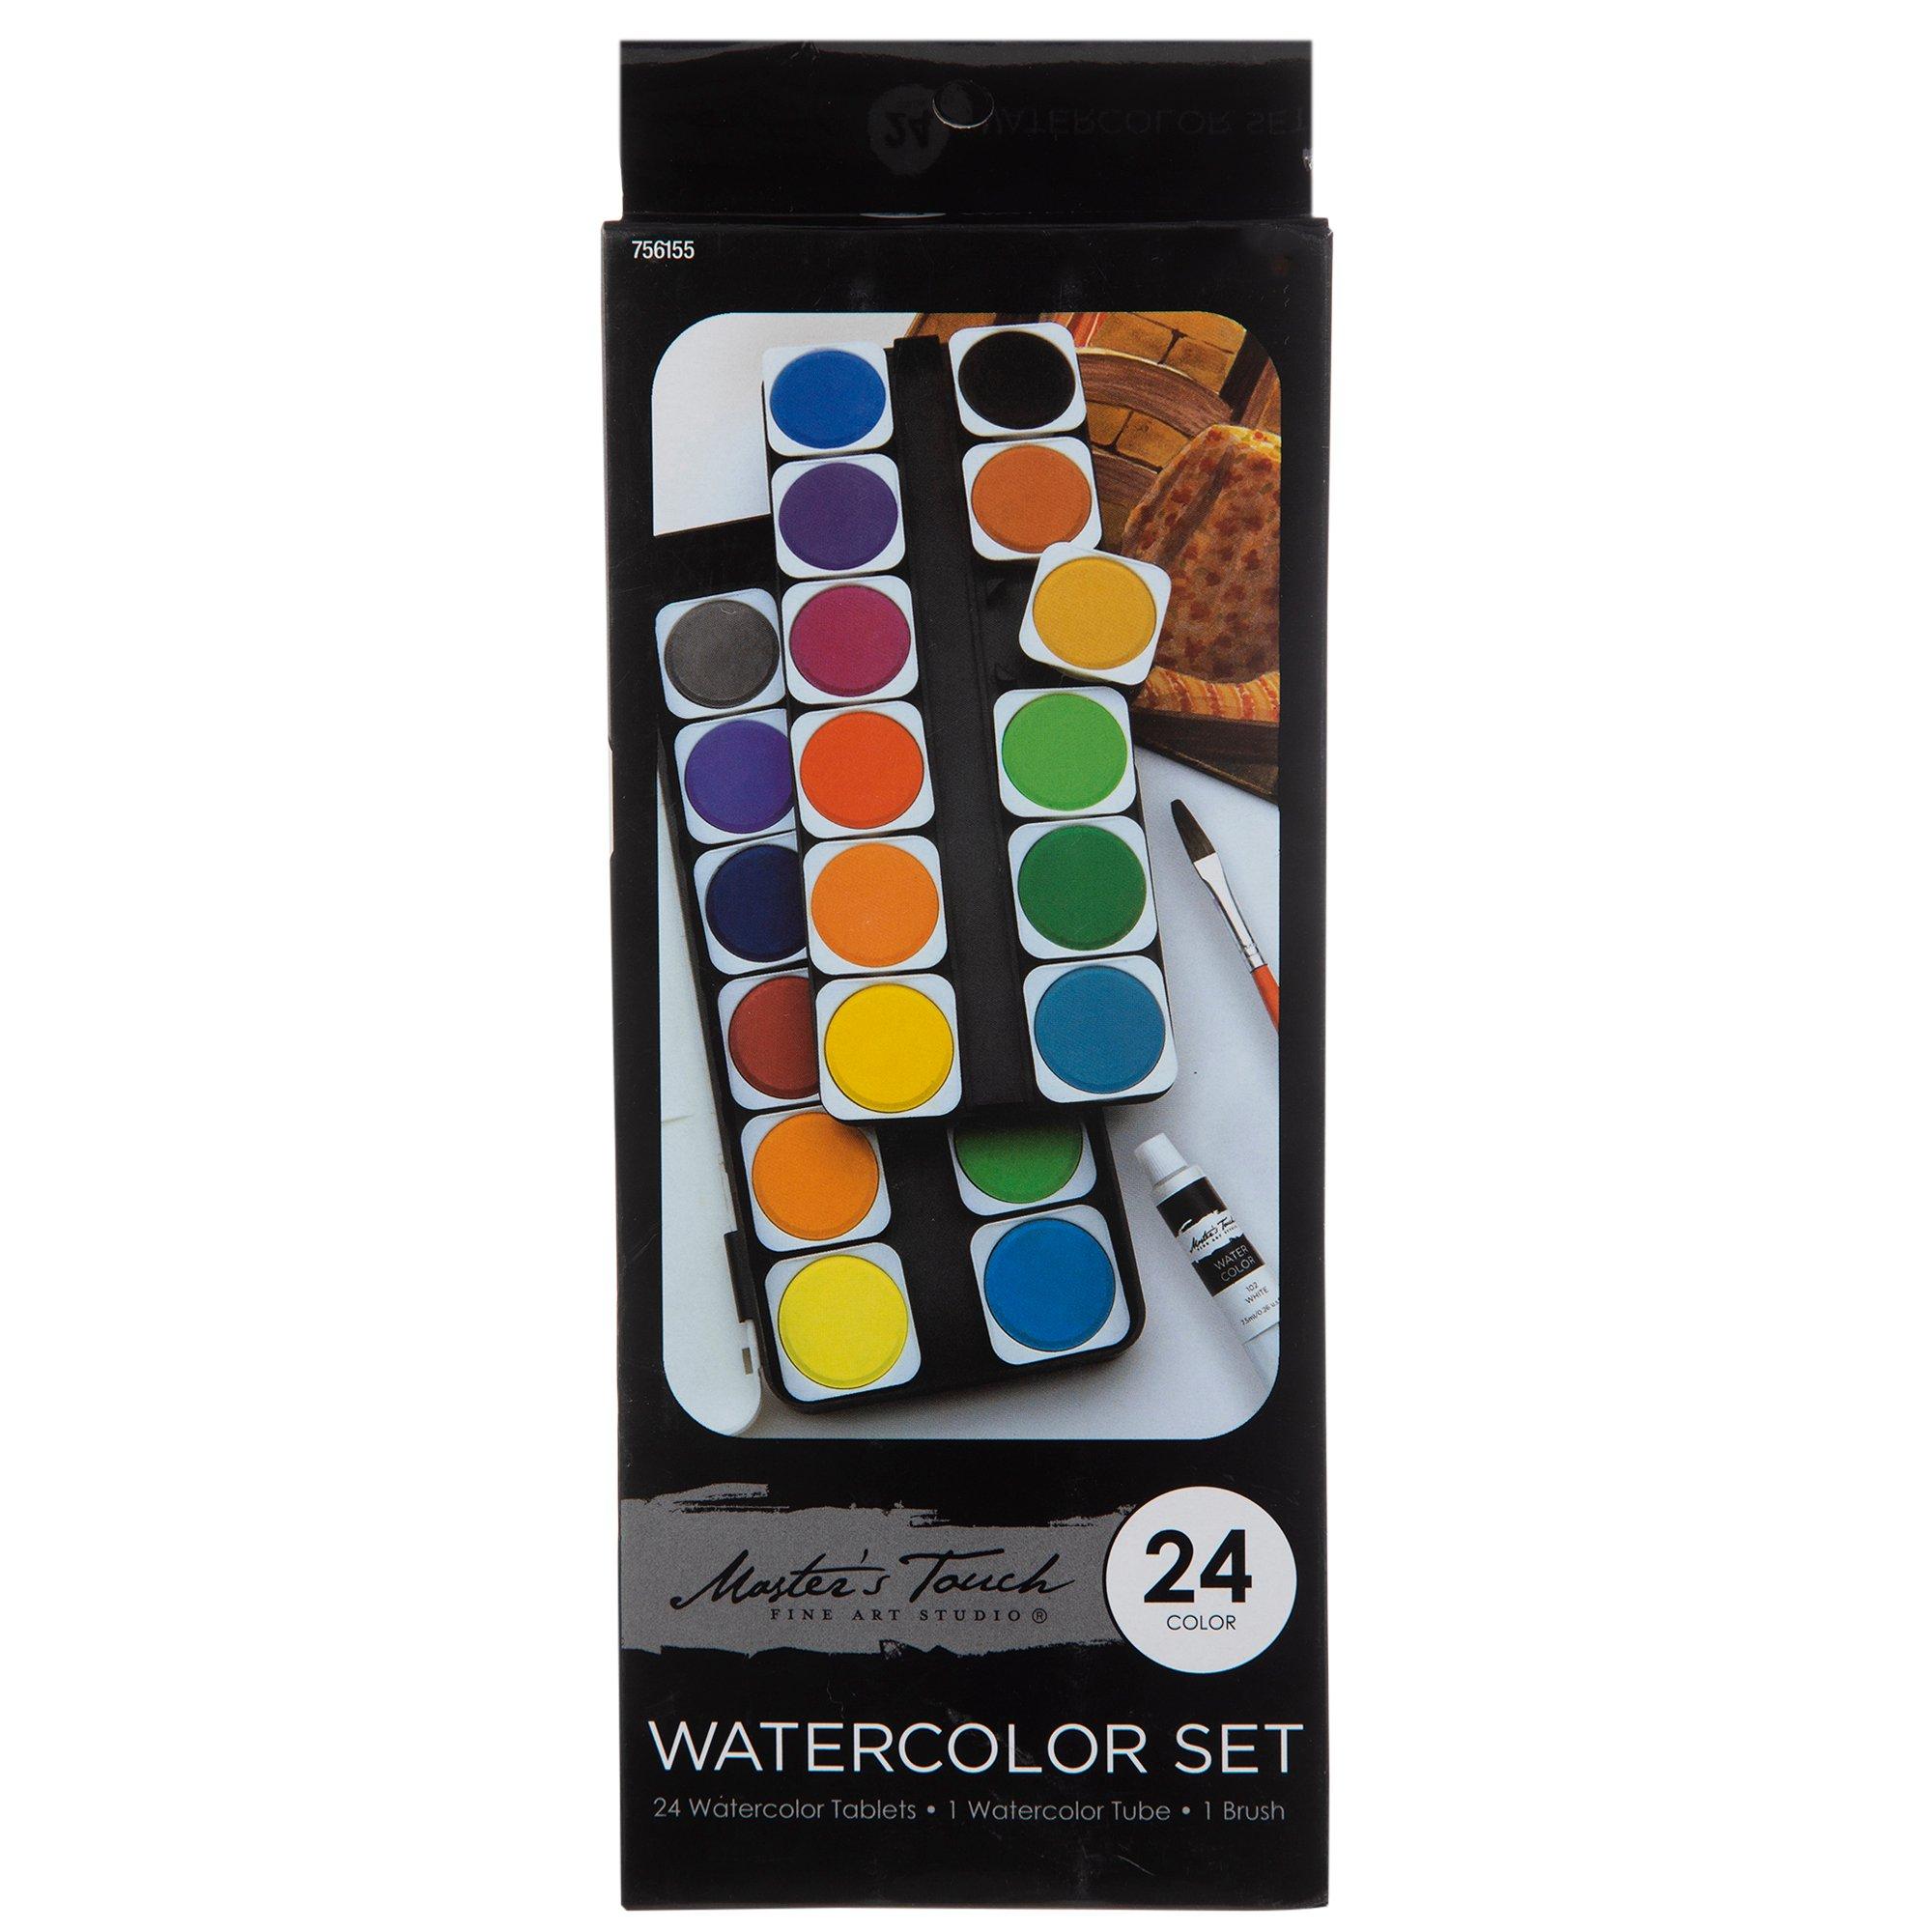 Watercolor Paint Set with 12 Pcs Watercolor Pencils,24 Watercolor Cake,4 Paint Brushes,Palette Portable Professional Art Set Supplies Painting Art